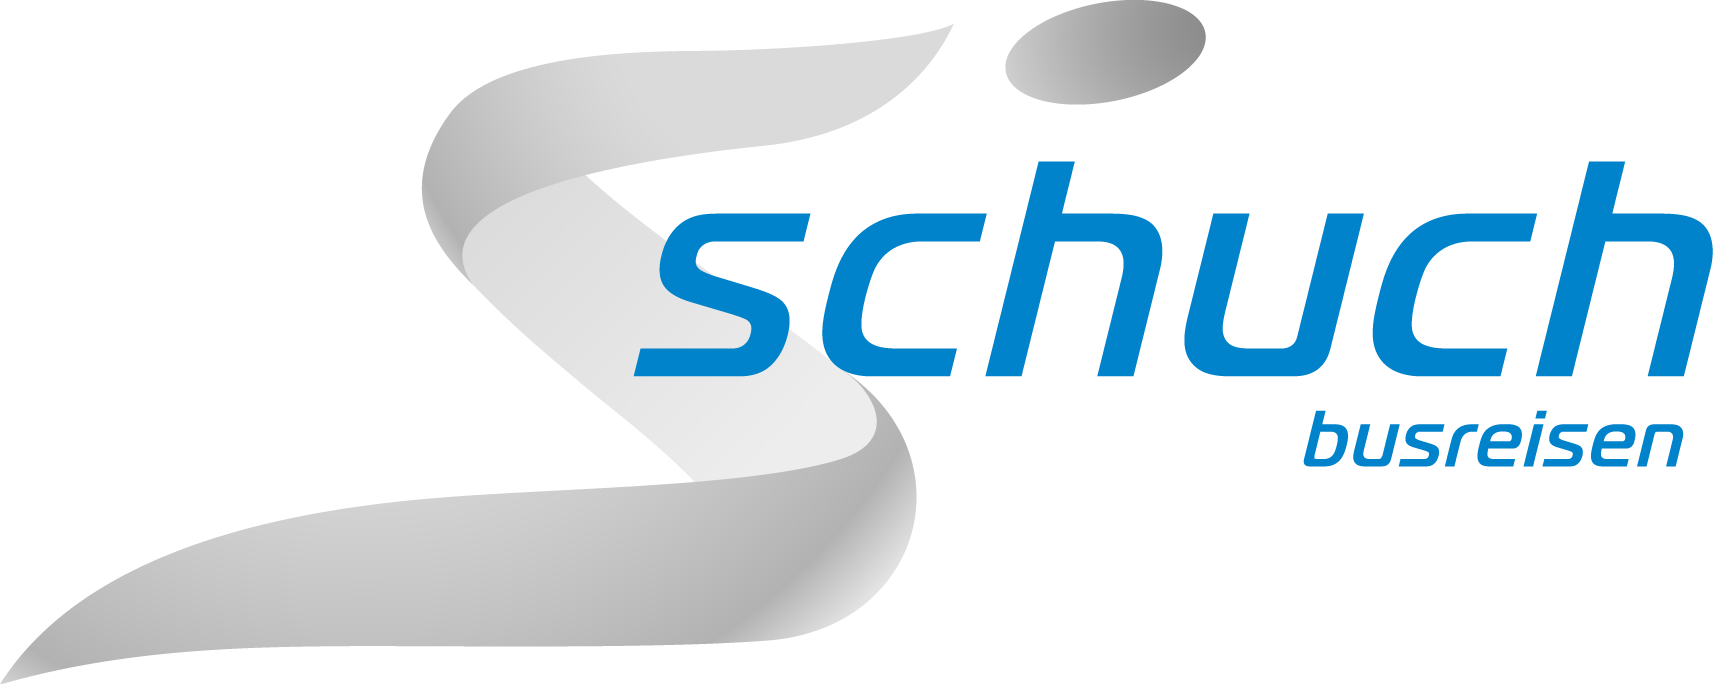 Logo Busreisen Schuch Rgb - Lacrosse (1713x684)